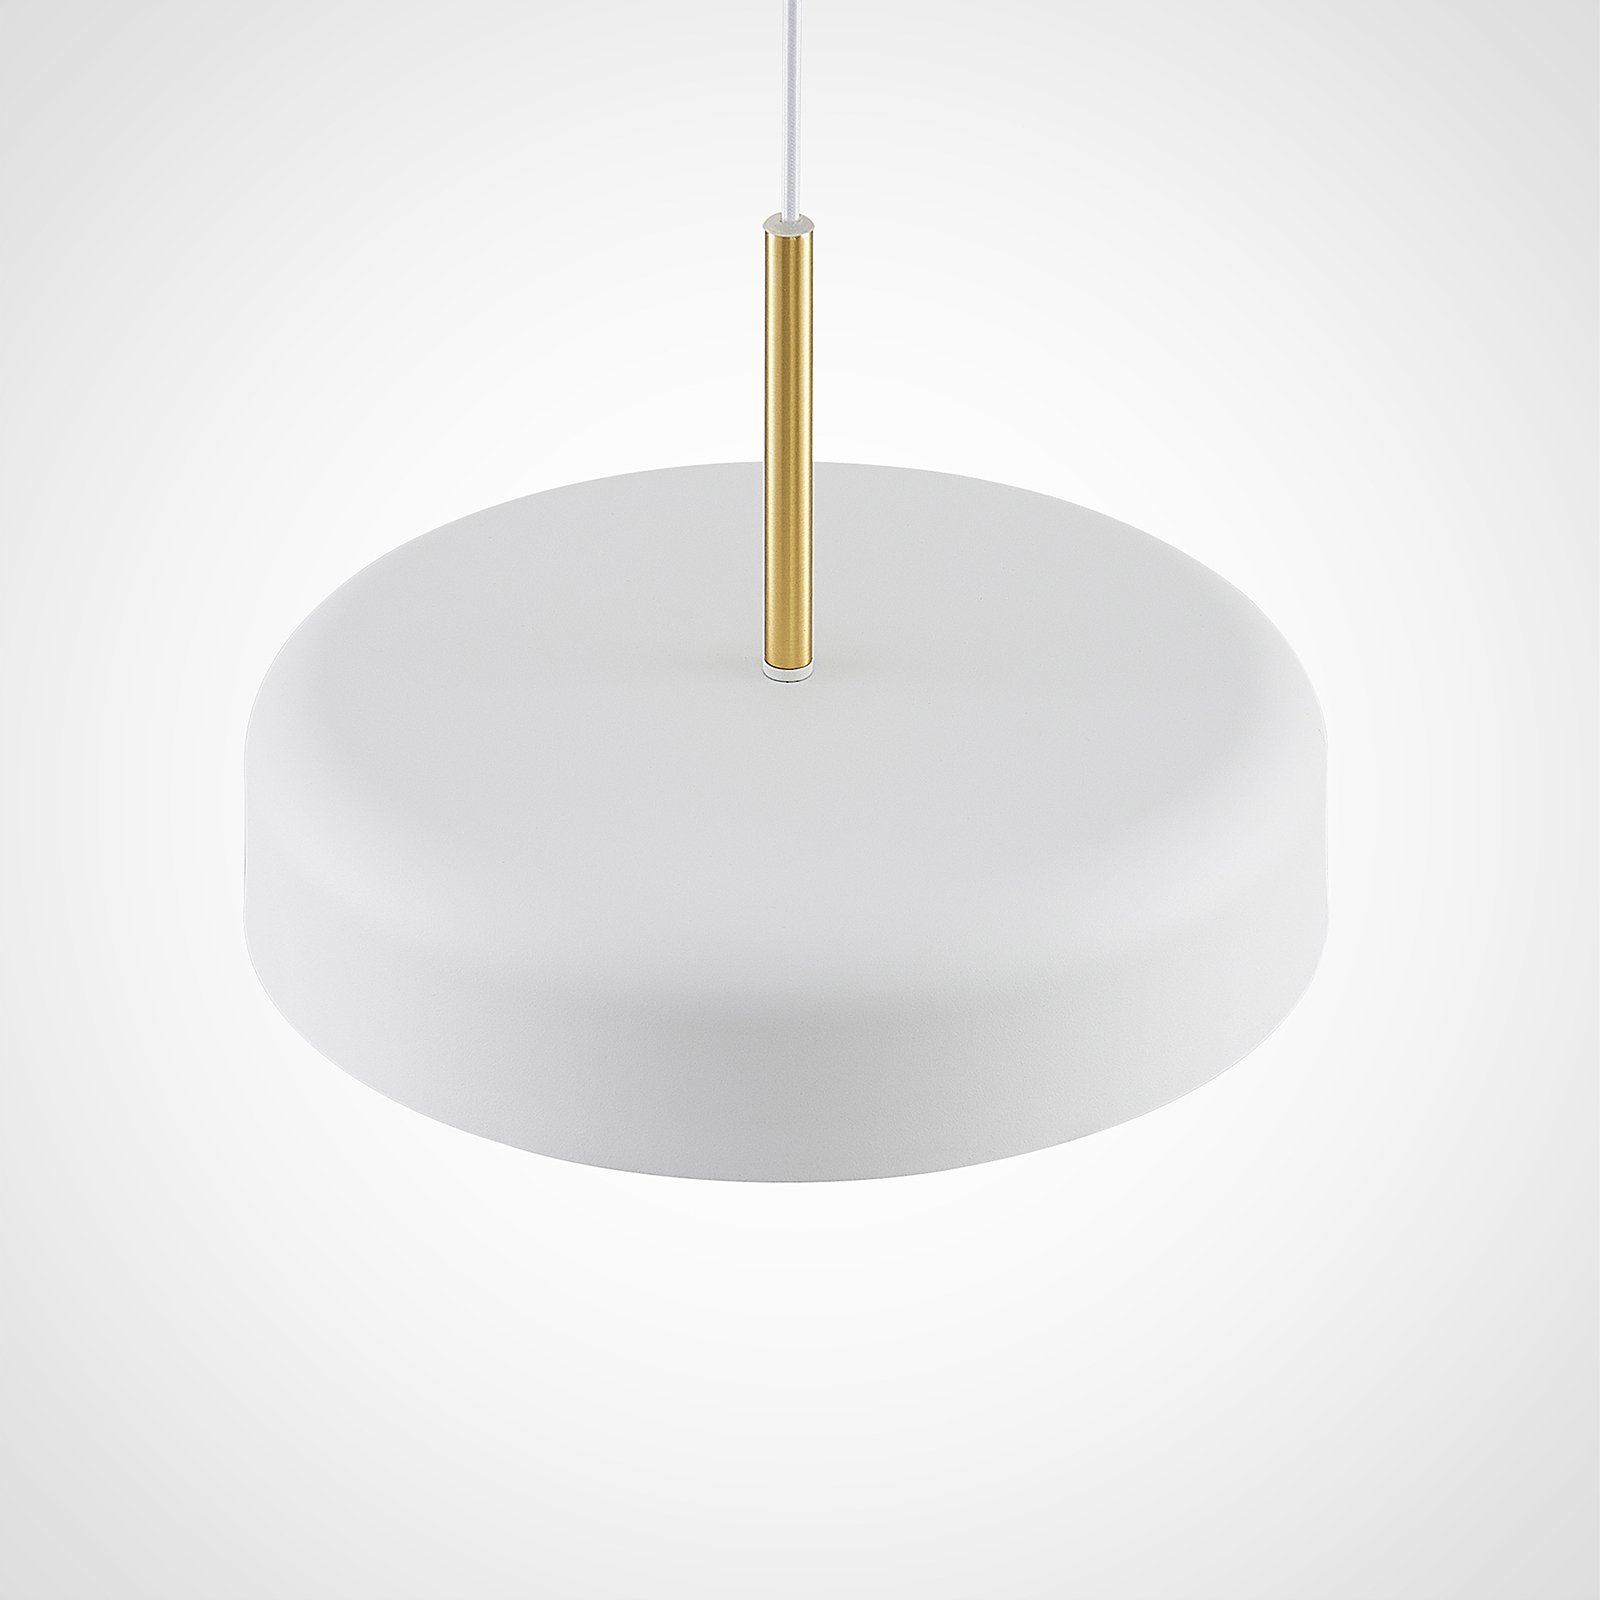 Lucande Filoreta pendant lamp, 35 cm, white